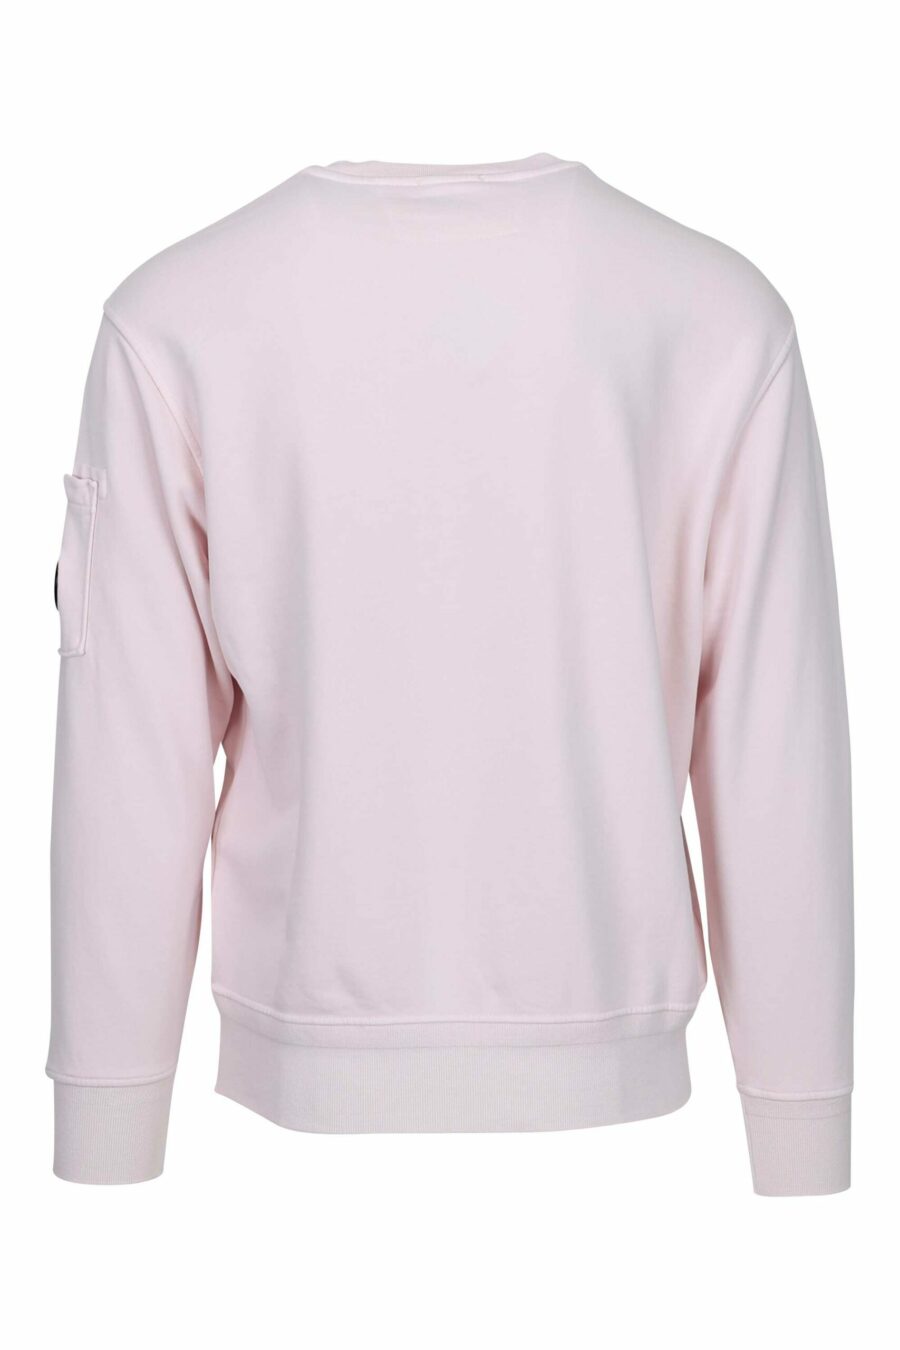 Rosa Sweatshirt mit Tasche und Mini-Logo - 7620943751697 2 skaliert